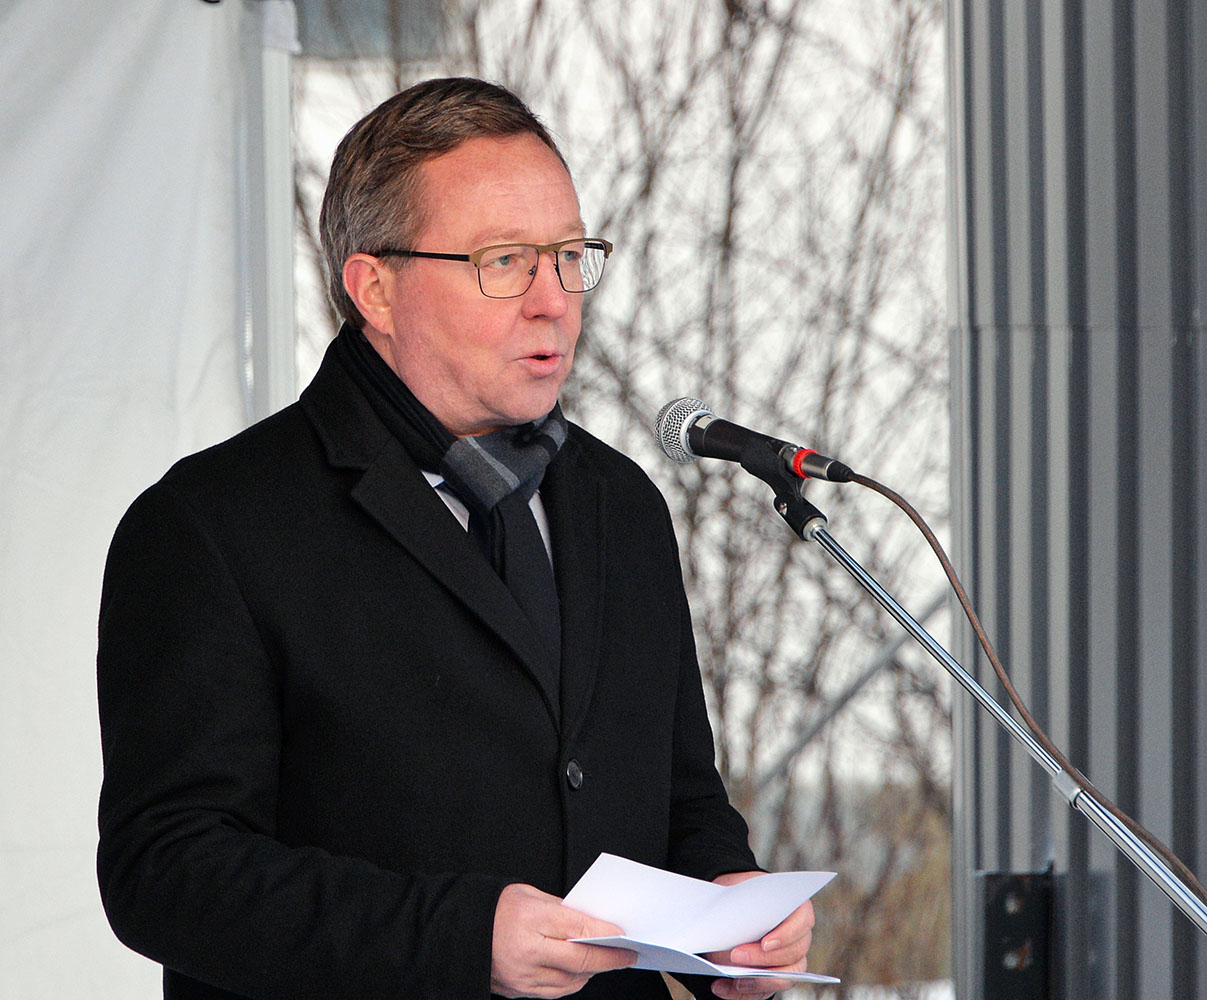 Mika Lintilä, the Finnish Minister of Economic Affairs